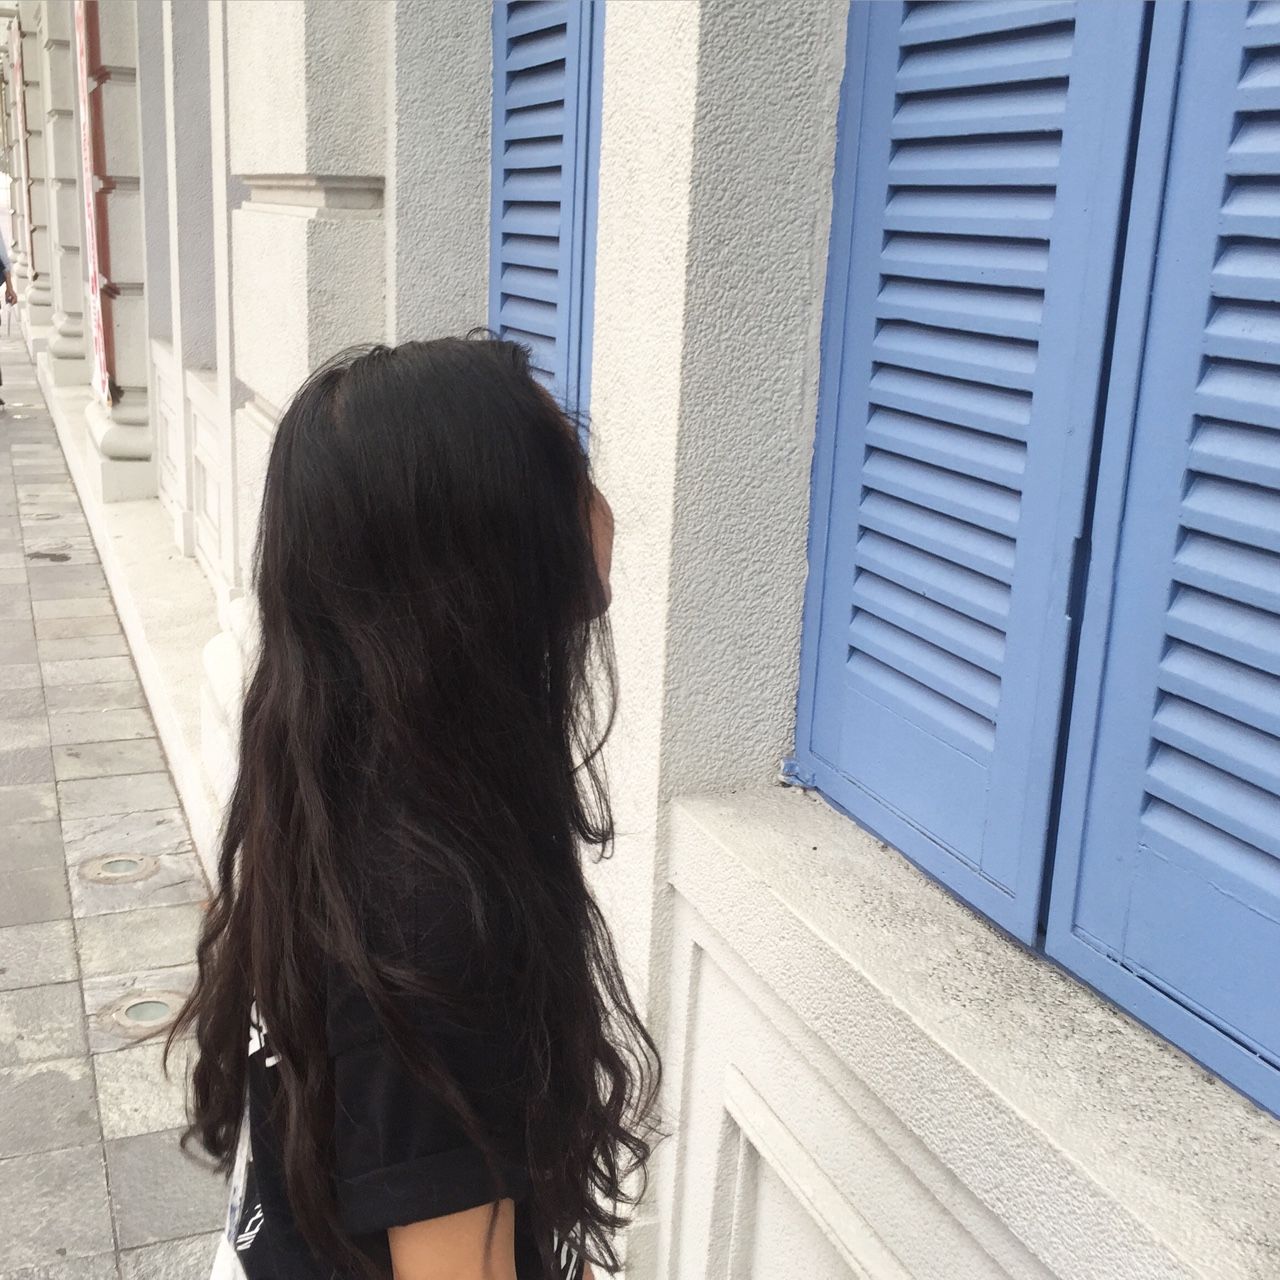 Фото девушки на аву брюнетка с длинными волосами